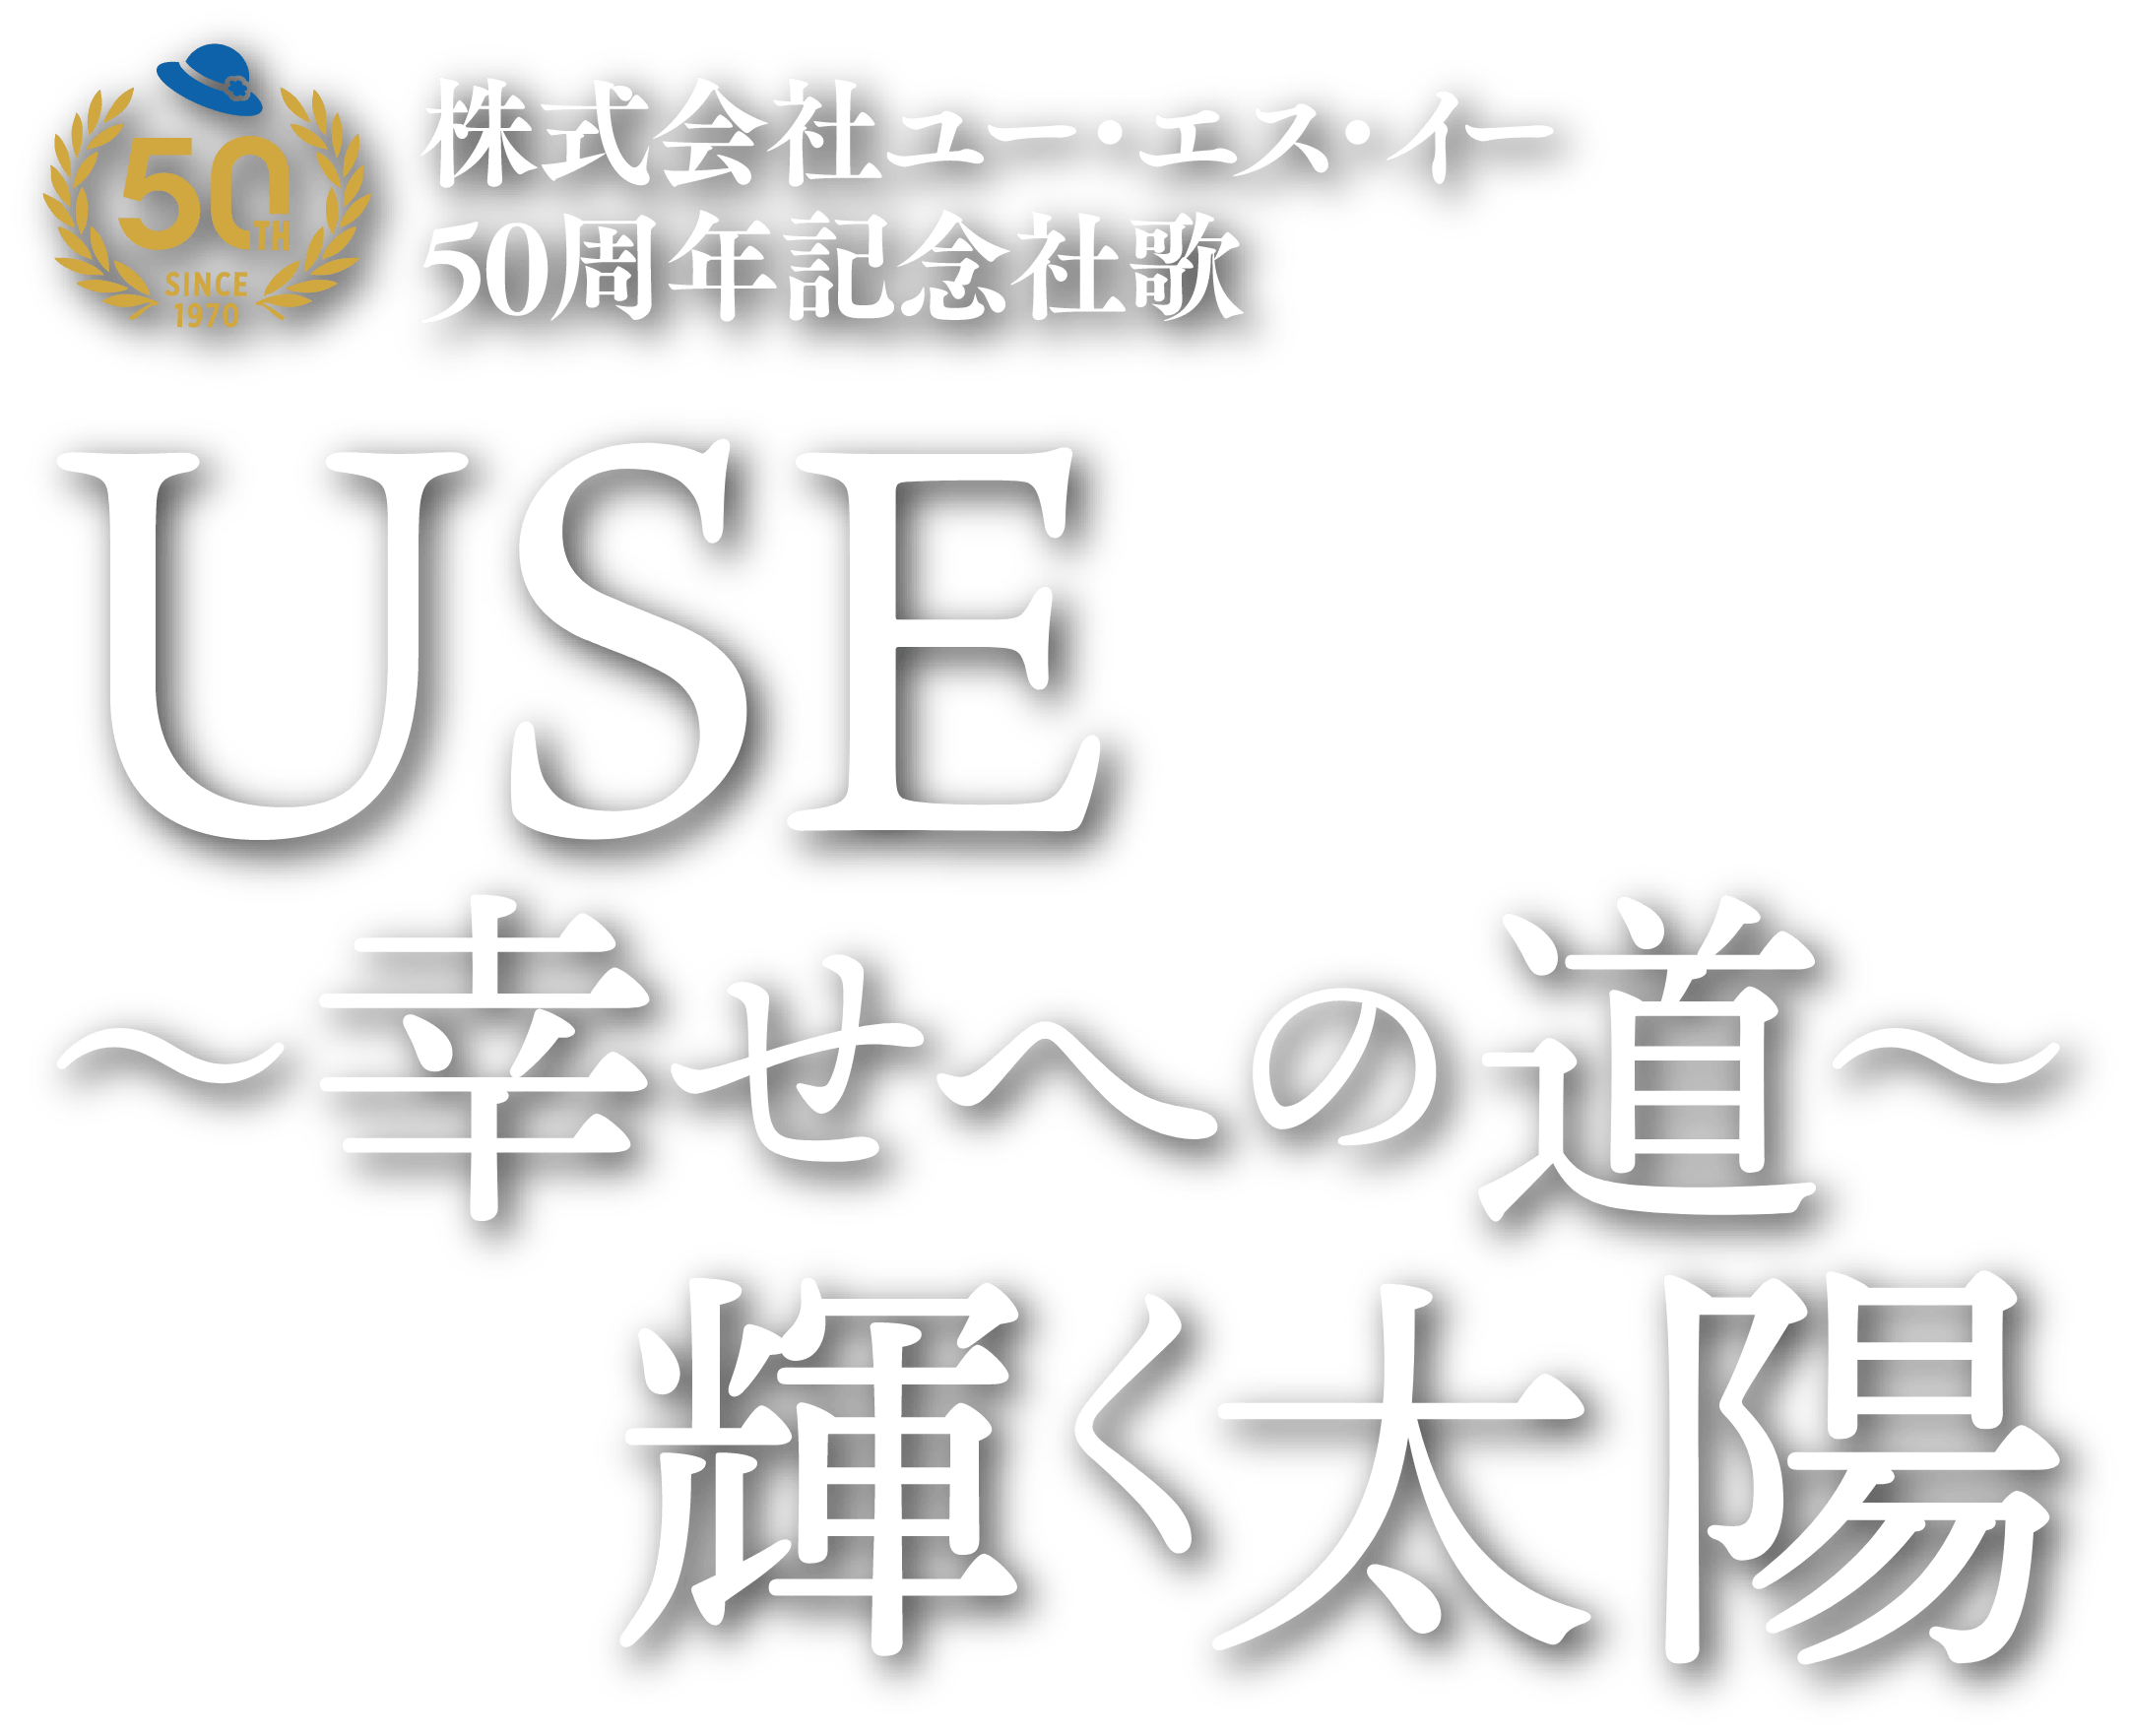 株式会社ユー・エス・イー50周年記念社歌 USE〜幸せへの道〜輝く太陽